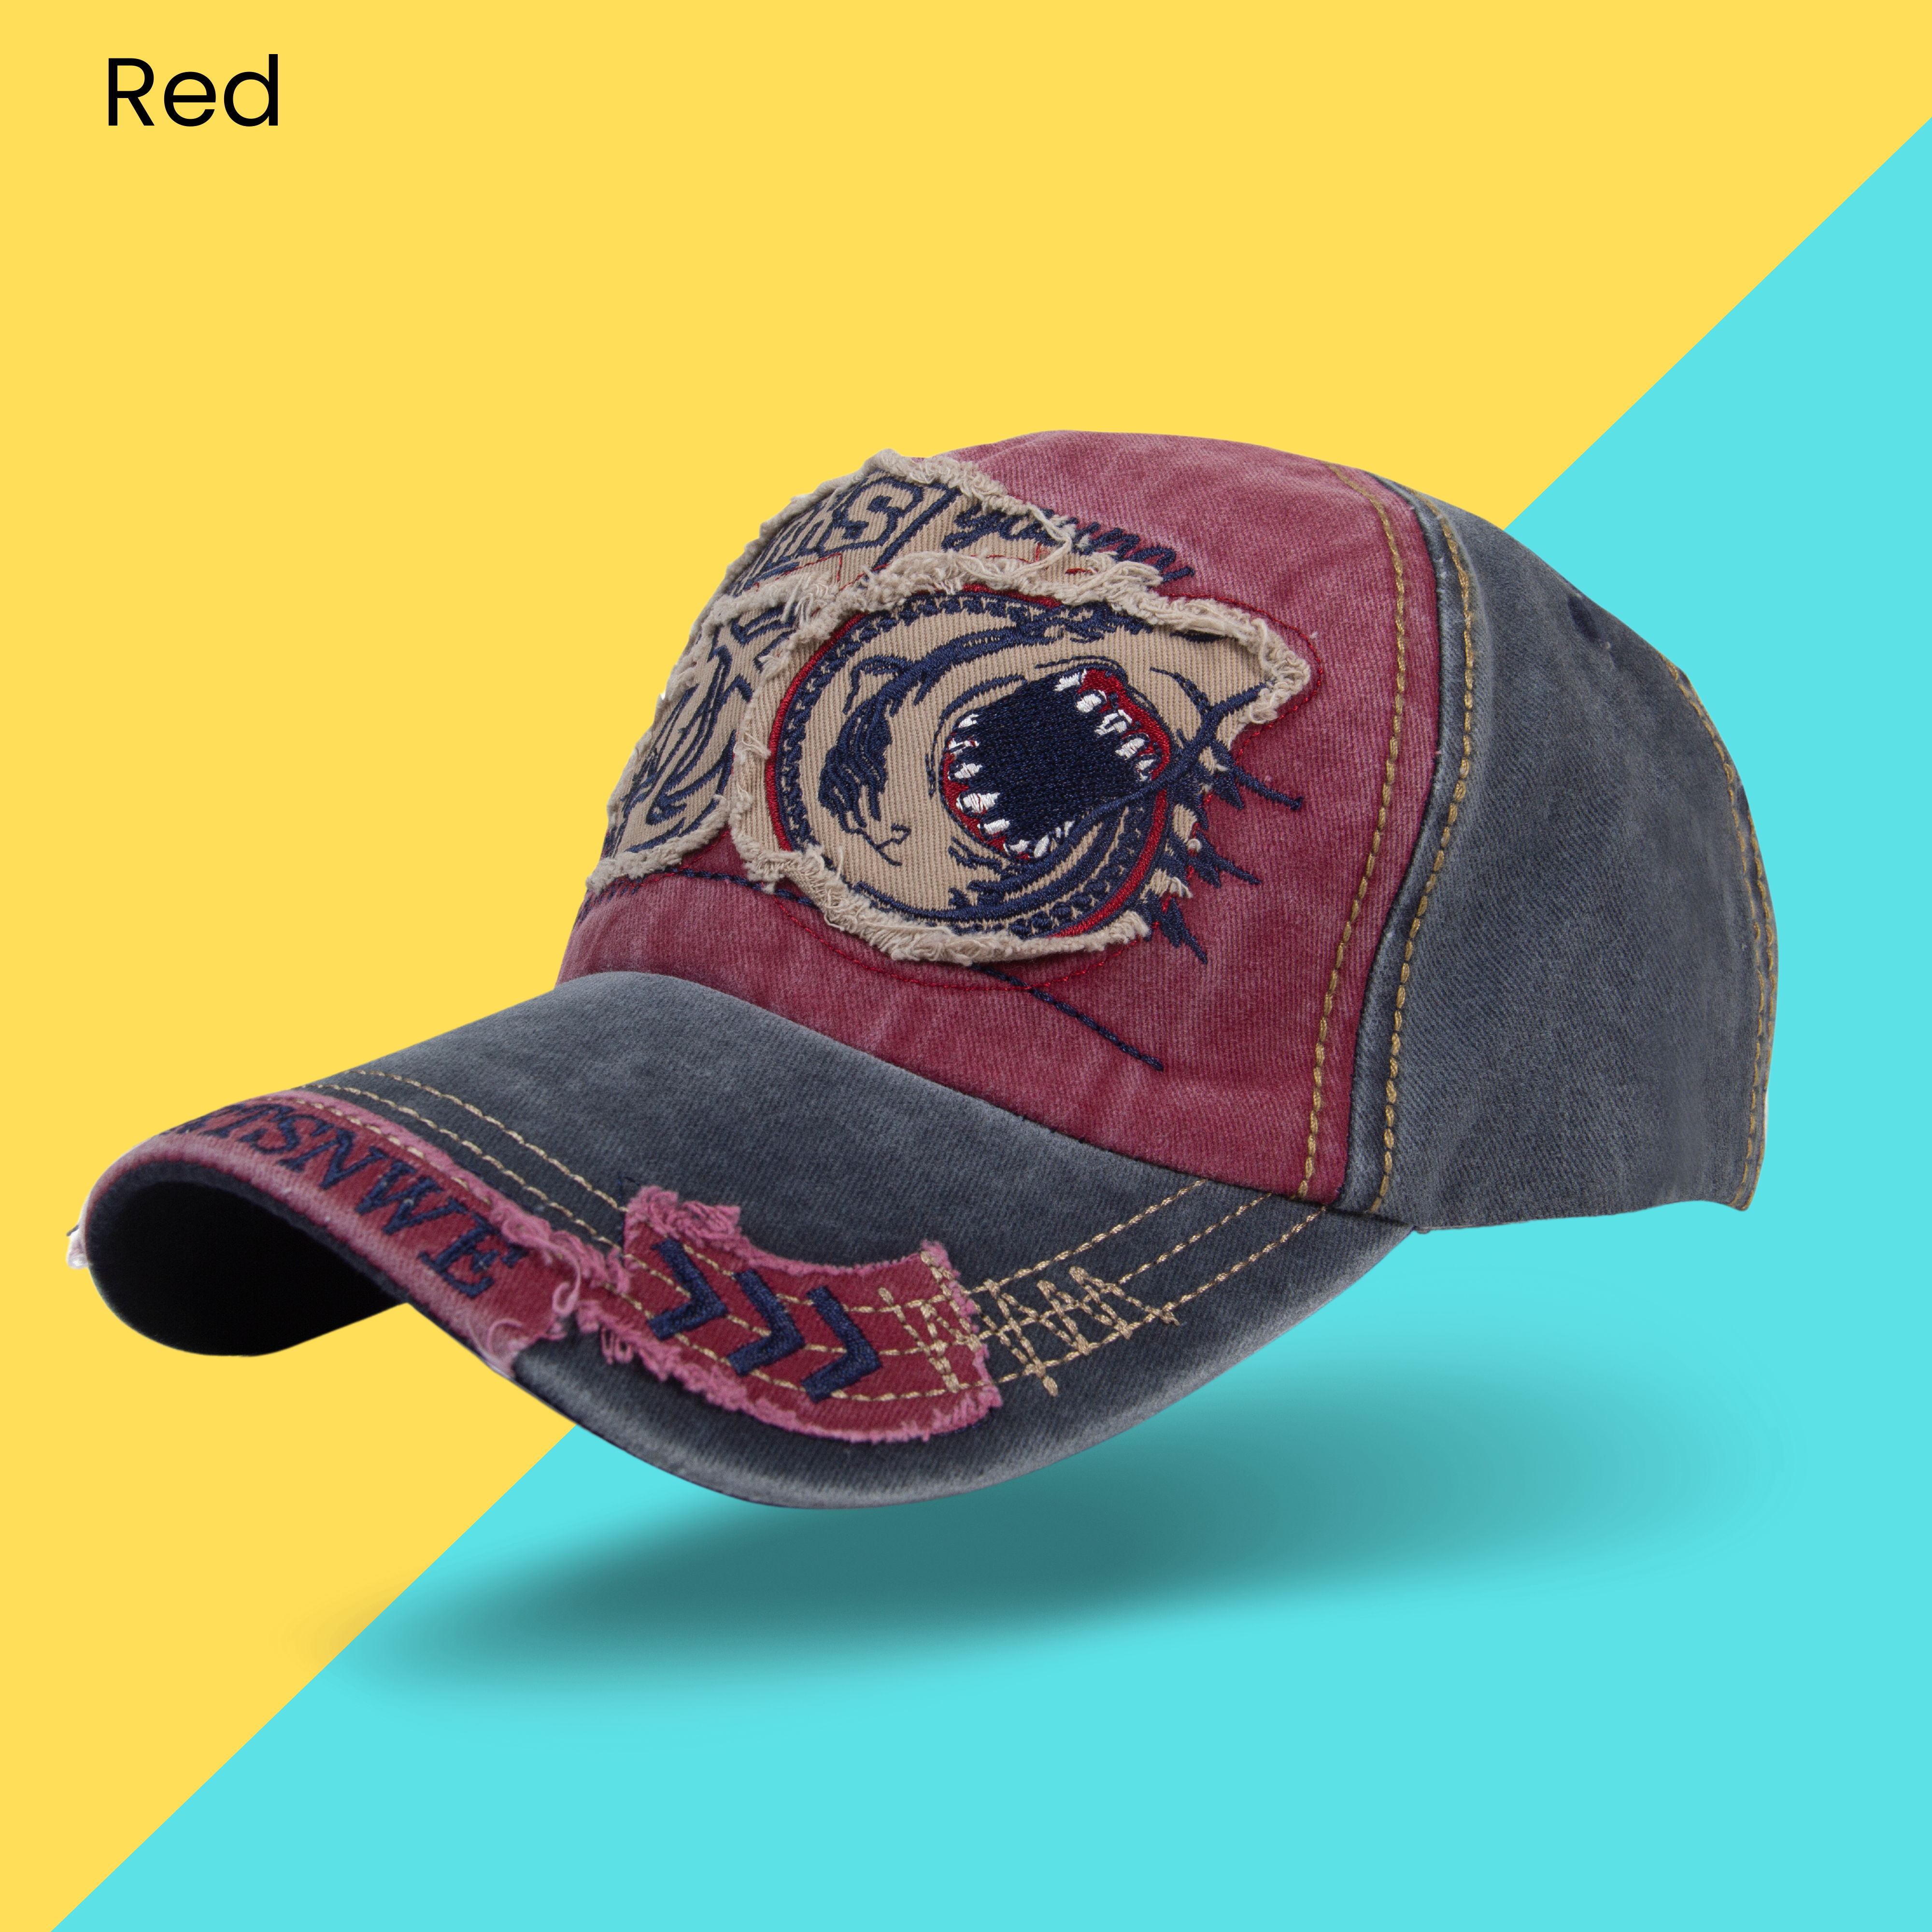 Men's Cap - Buy caps Online for Men Women at best price - AAVJO